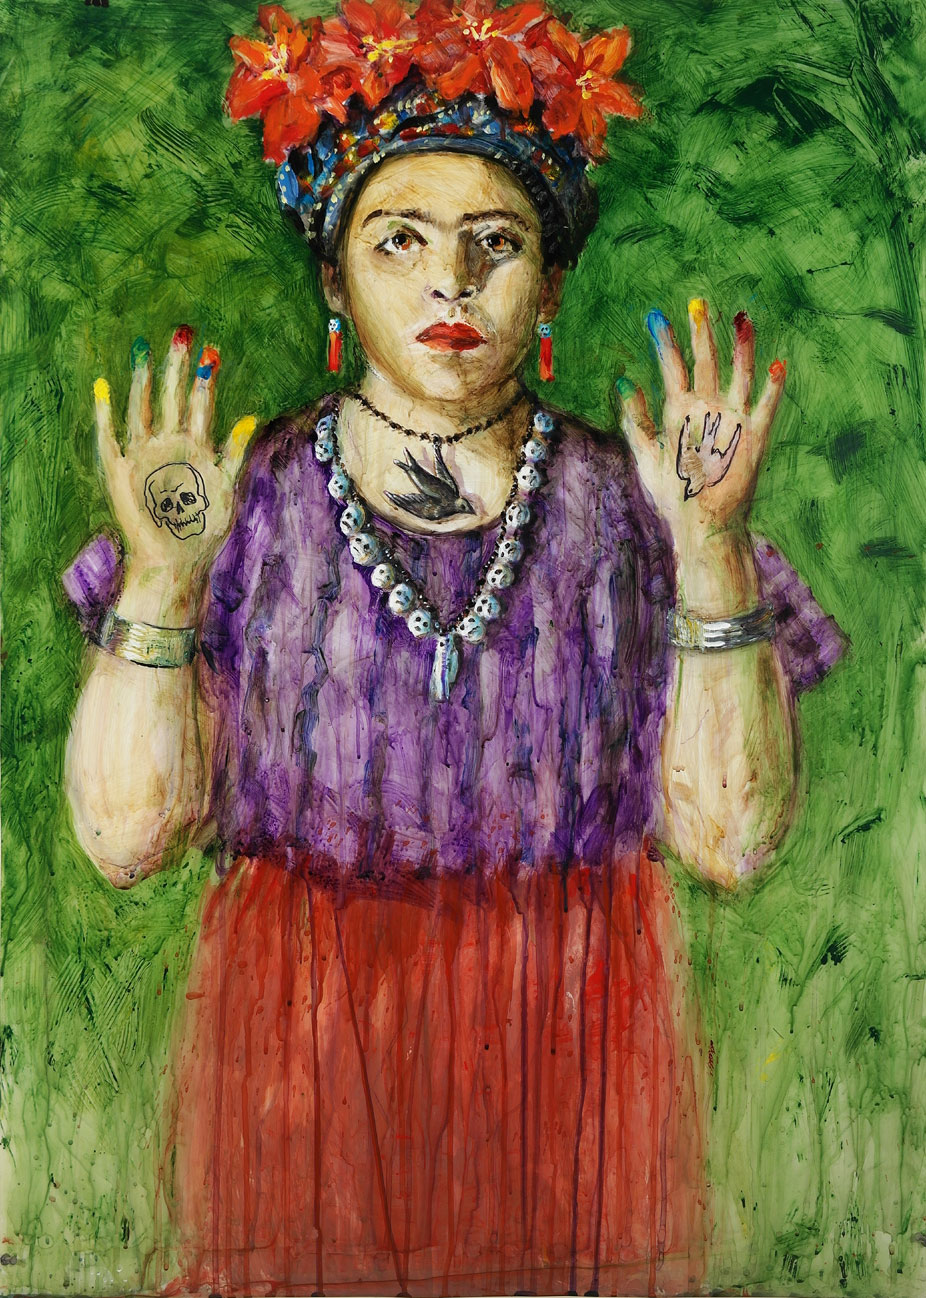 char-M-as-Frida-Kahlo-42-x-